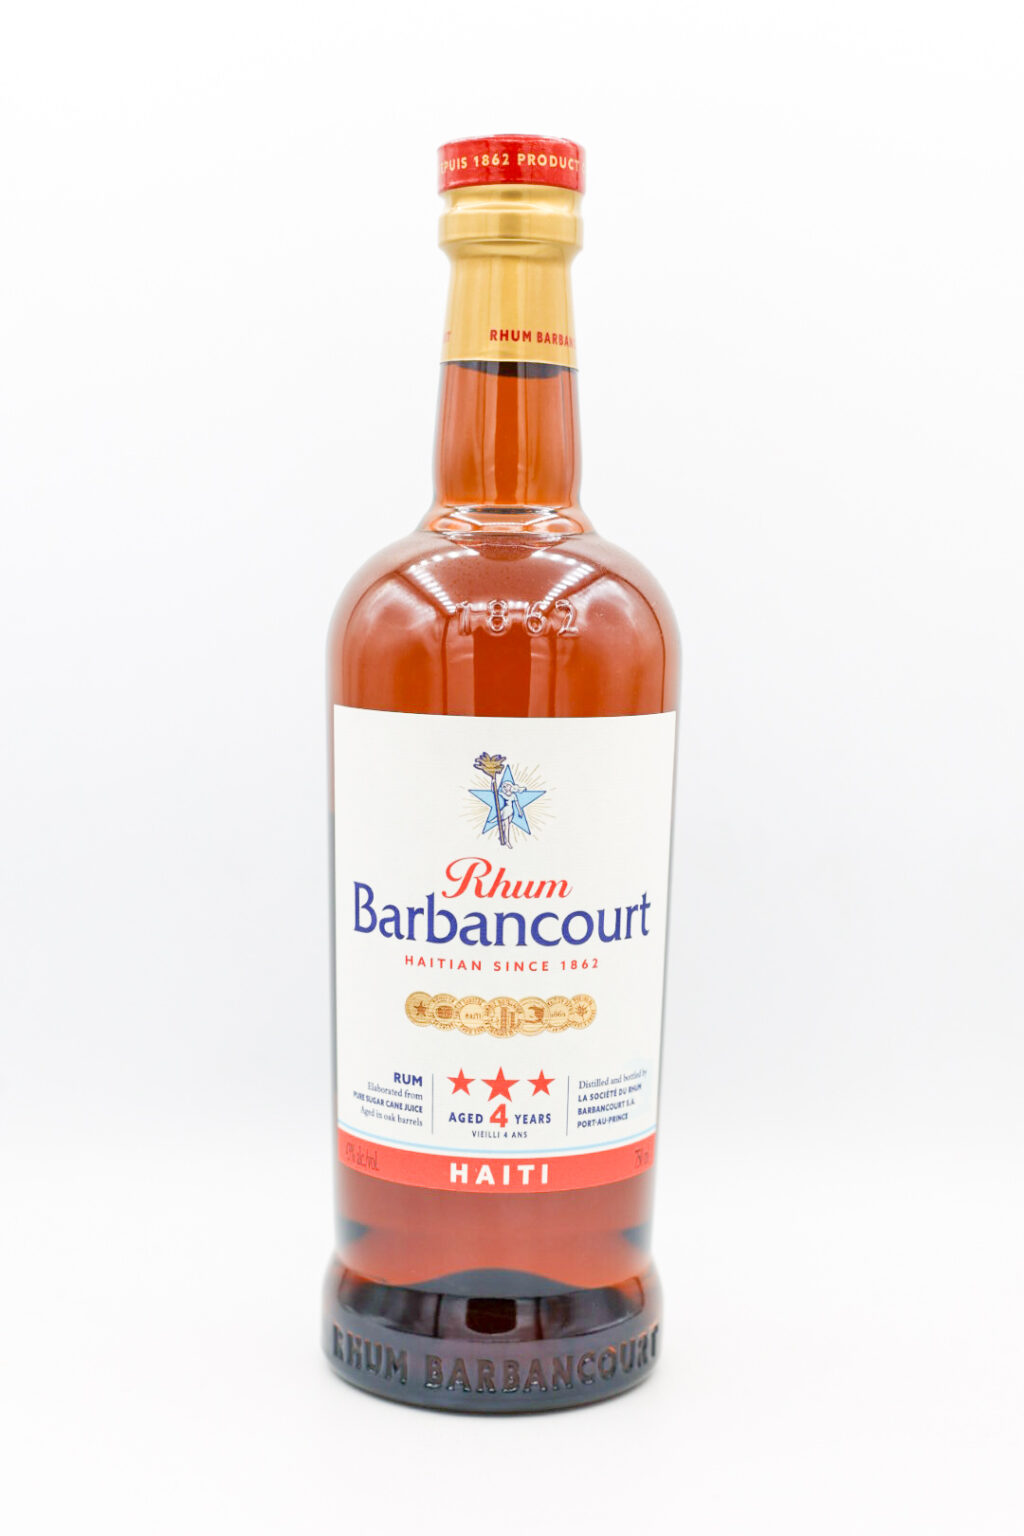 Barbancourt 3 Star Rum Aged 4 Years 750ml